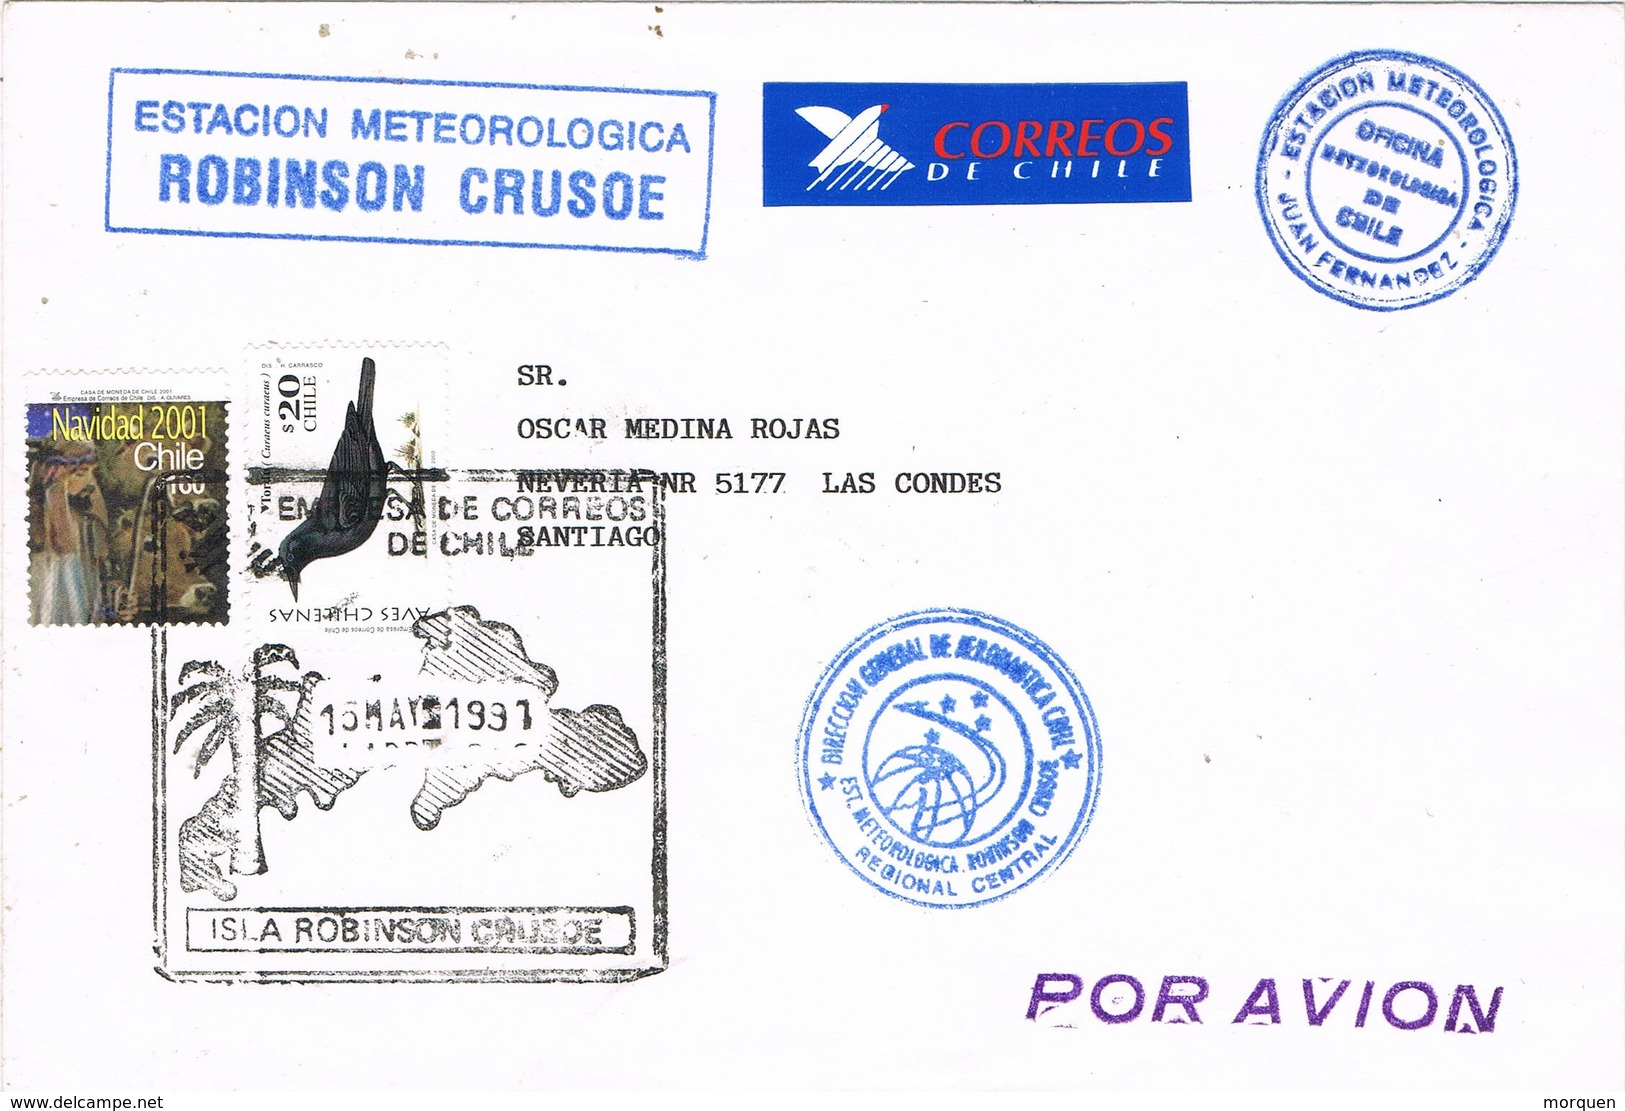 30958. Carta Aerea JUAN FERNANDEZ (Chile) 1991. Isla Robinson CRUSOE, Estacion Meteorologica - Chile